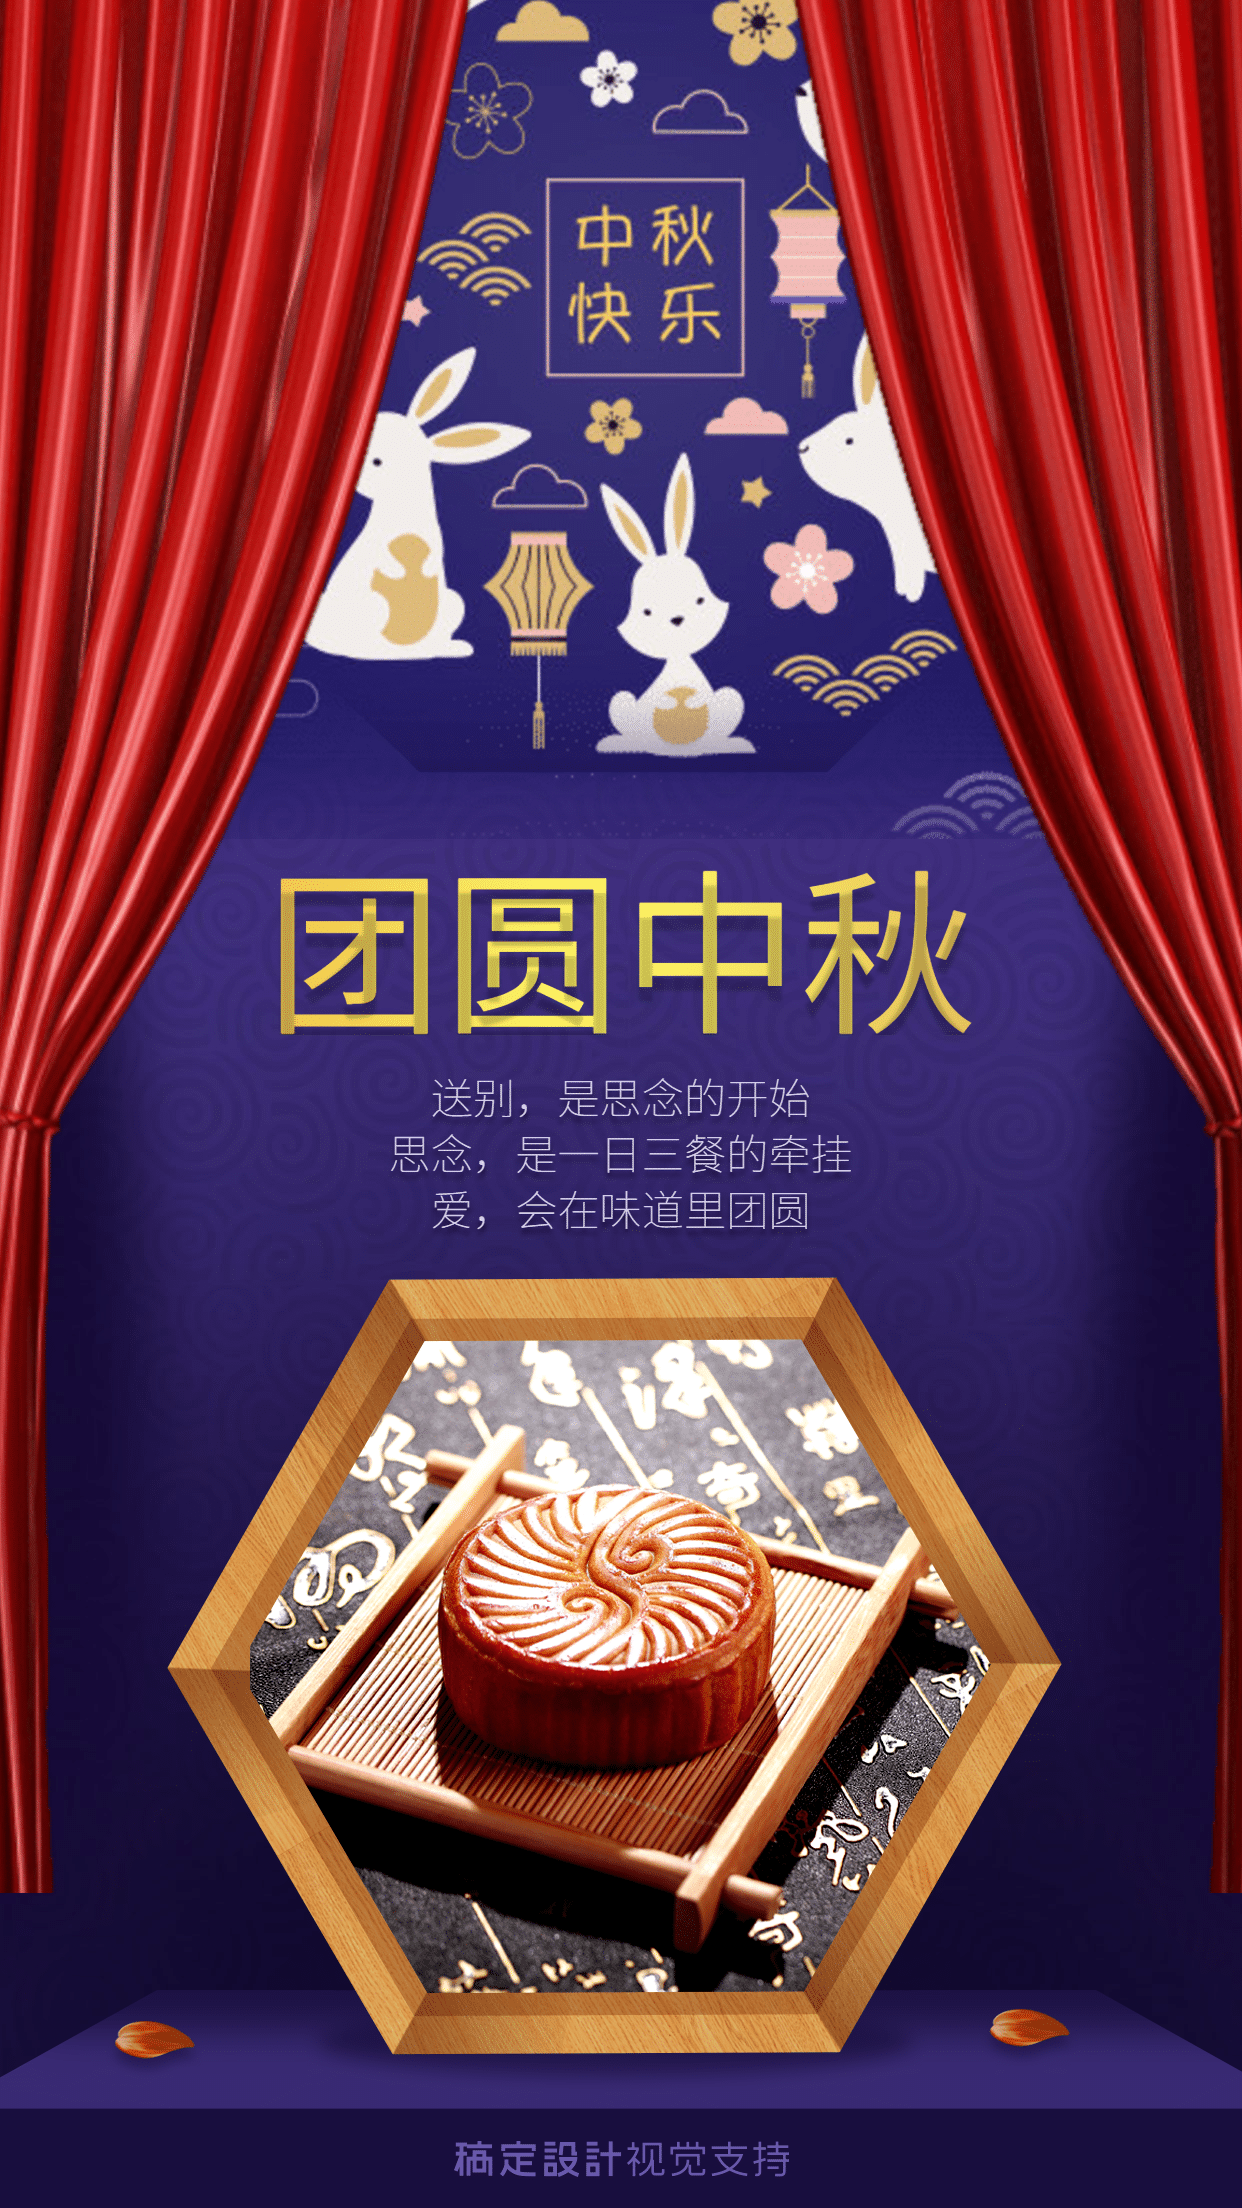 团圆中秋月饼产品展示海报预览效果